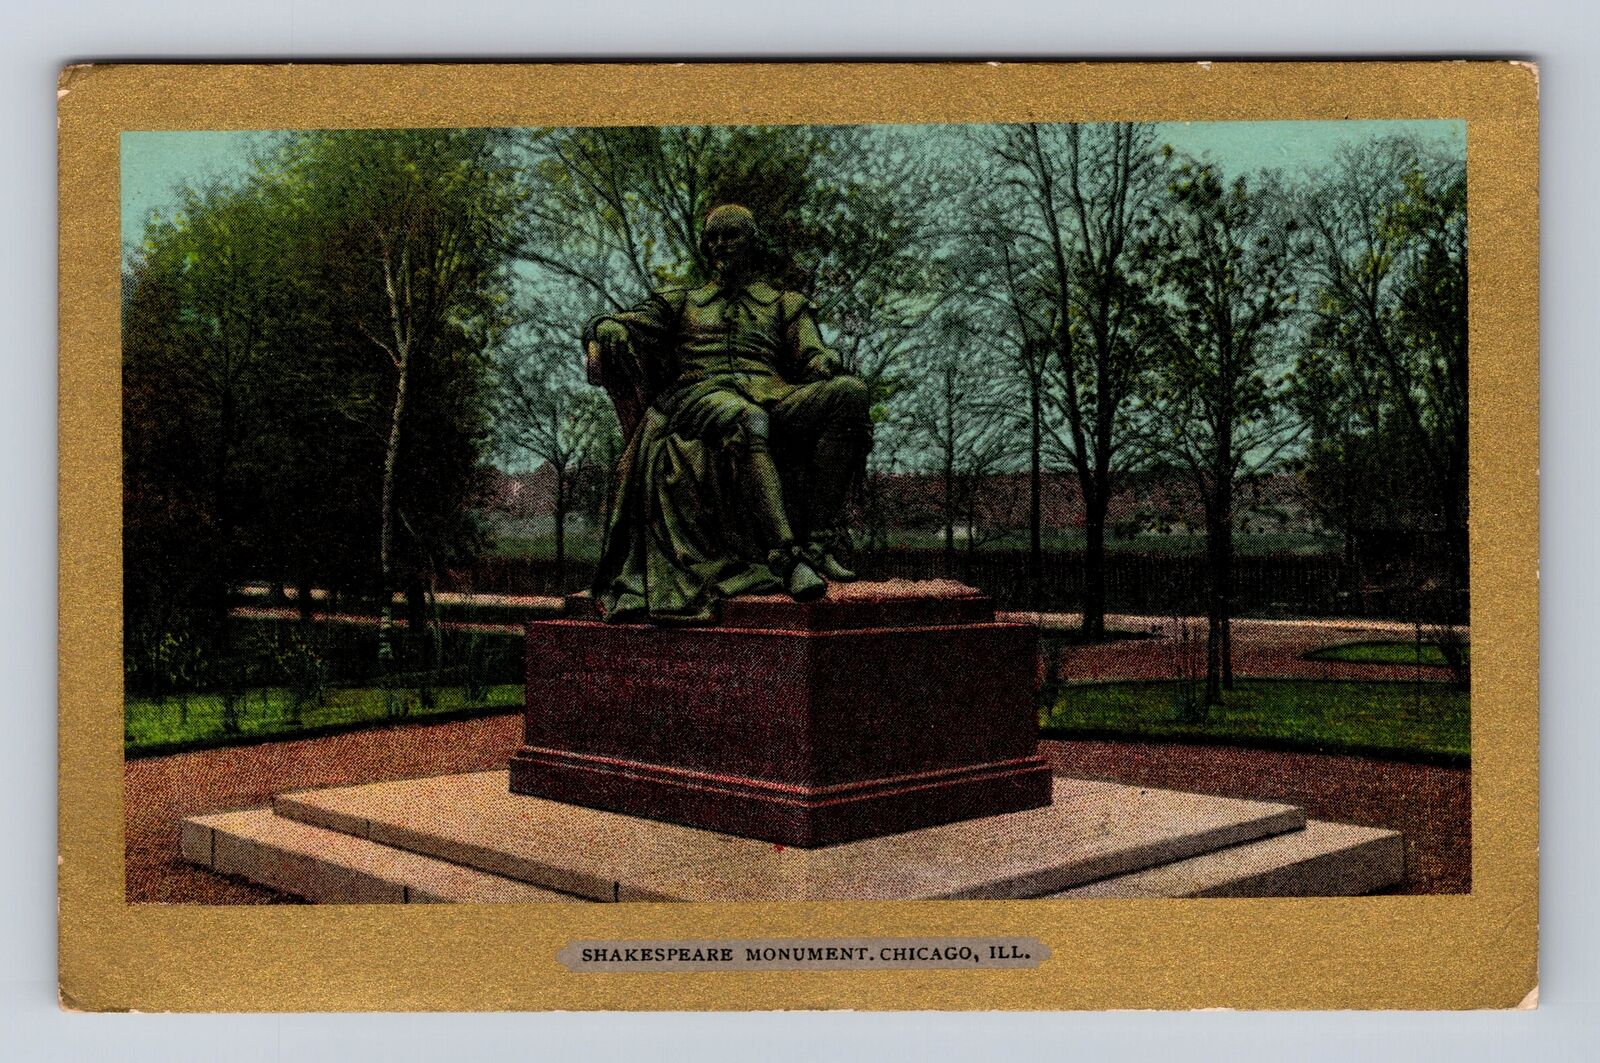 Chicago IL-Illinois, Shakespeare Monument, Antique Vintage Souvenir Postcard